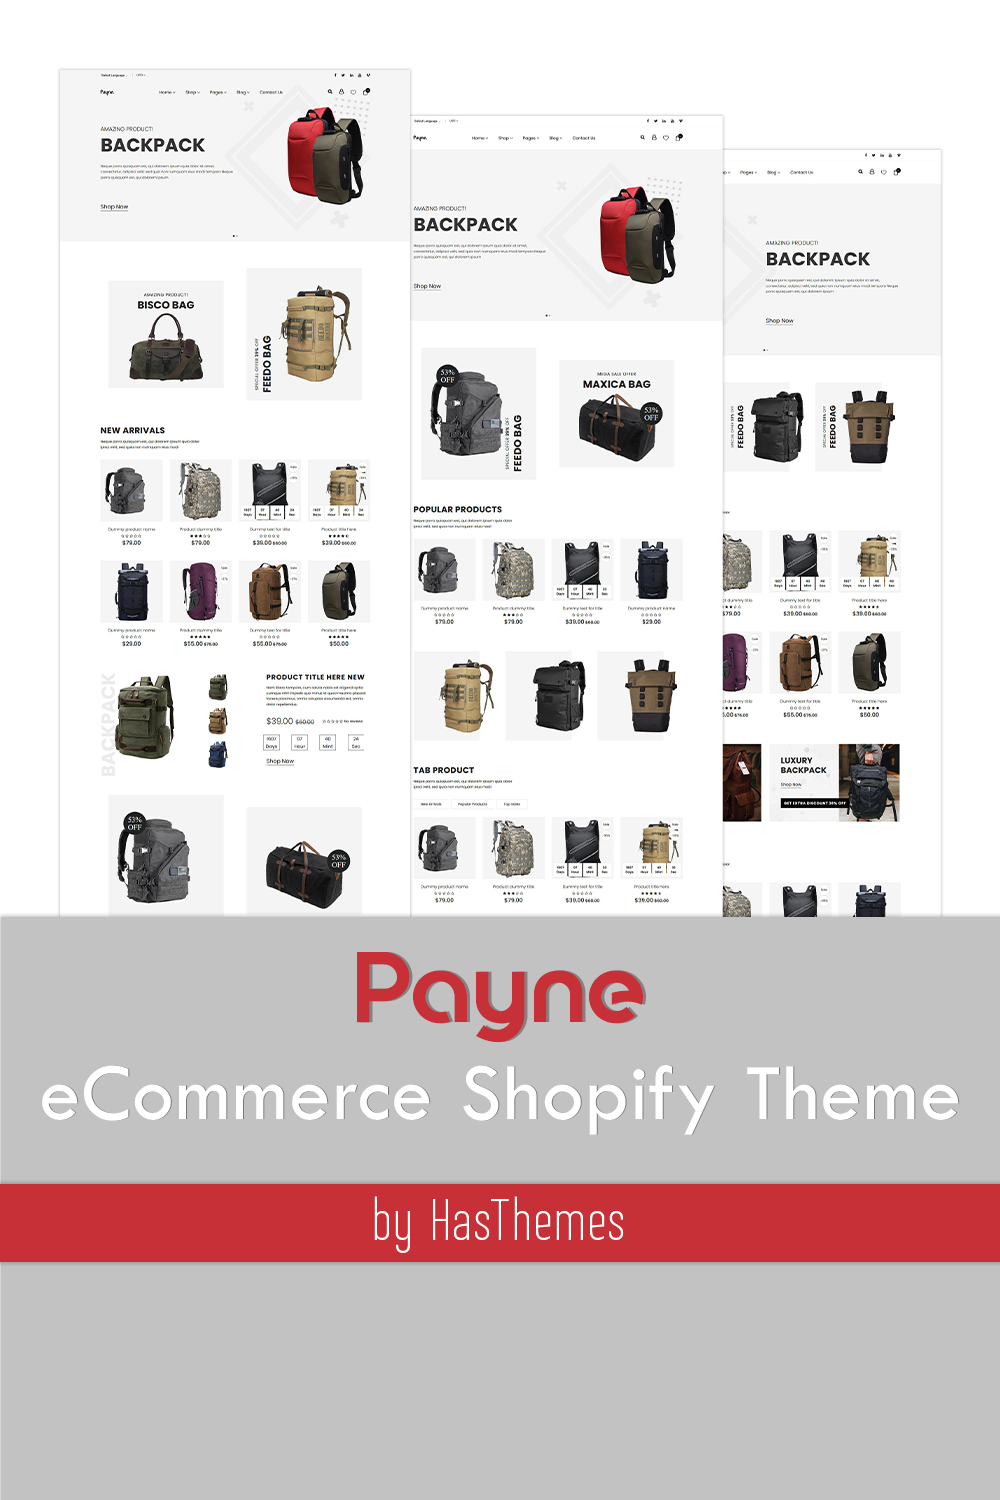 Ecommerce shopify theme payne images of pinterest.